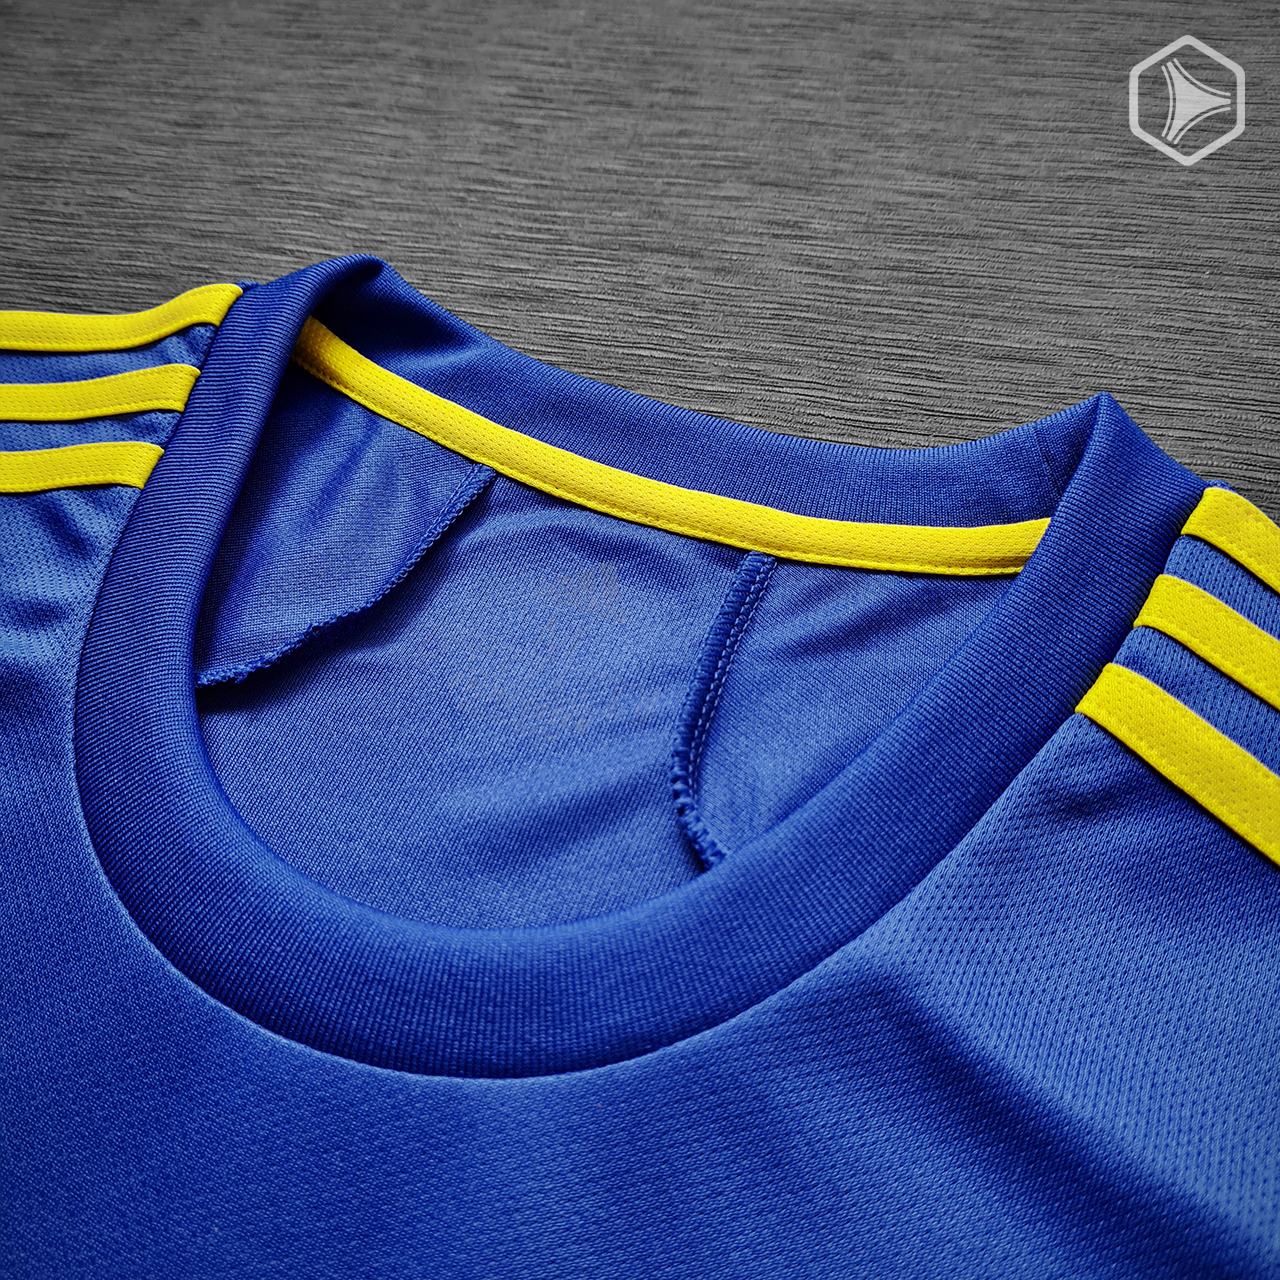 Camiseta titular adidas de Boca Juniors 2021 2022